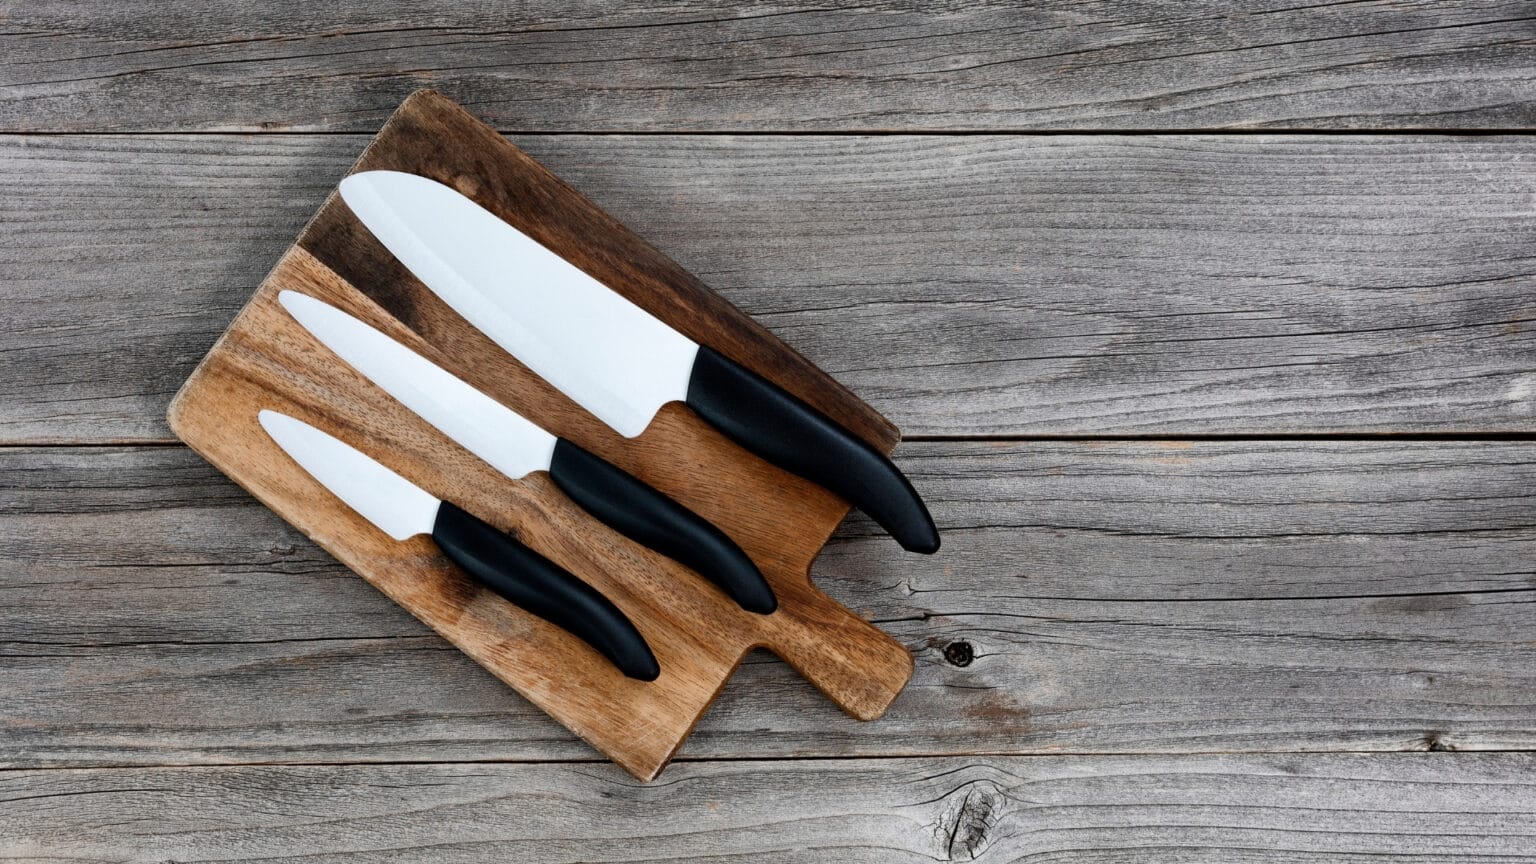 Ceramic Knife to Slice Bread